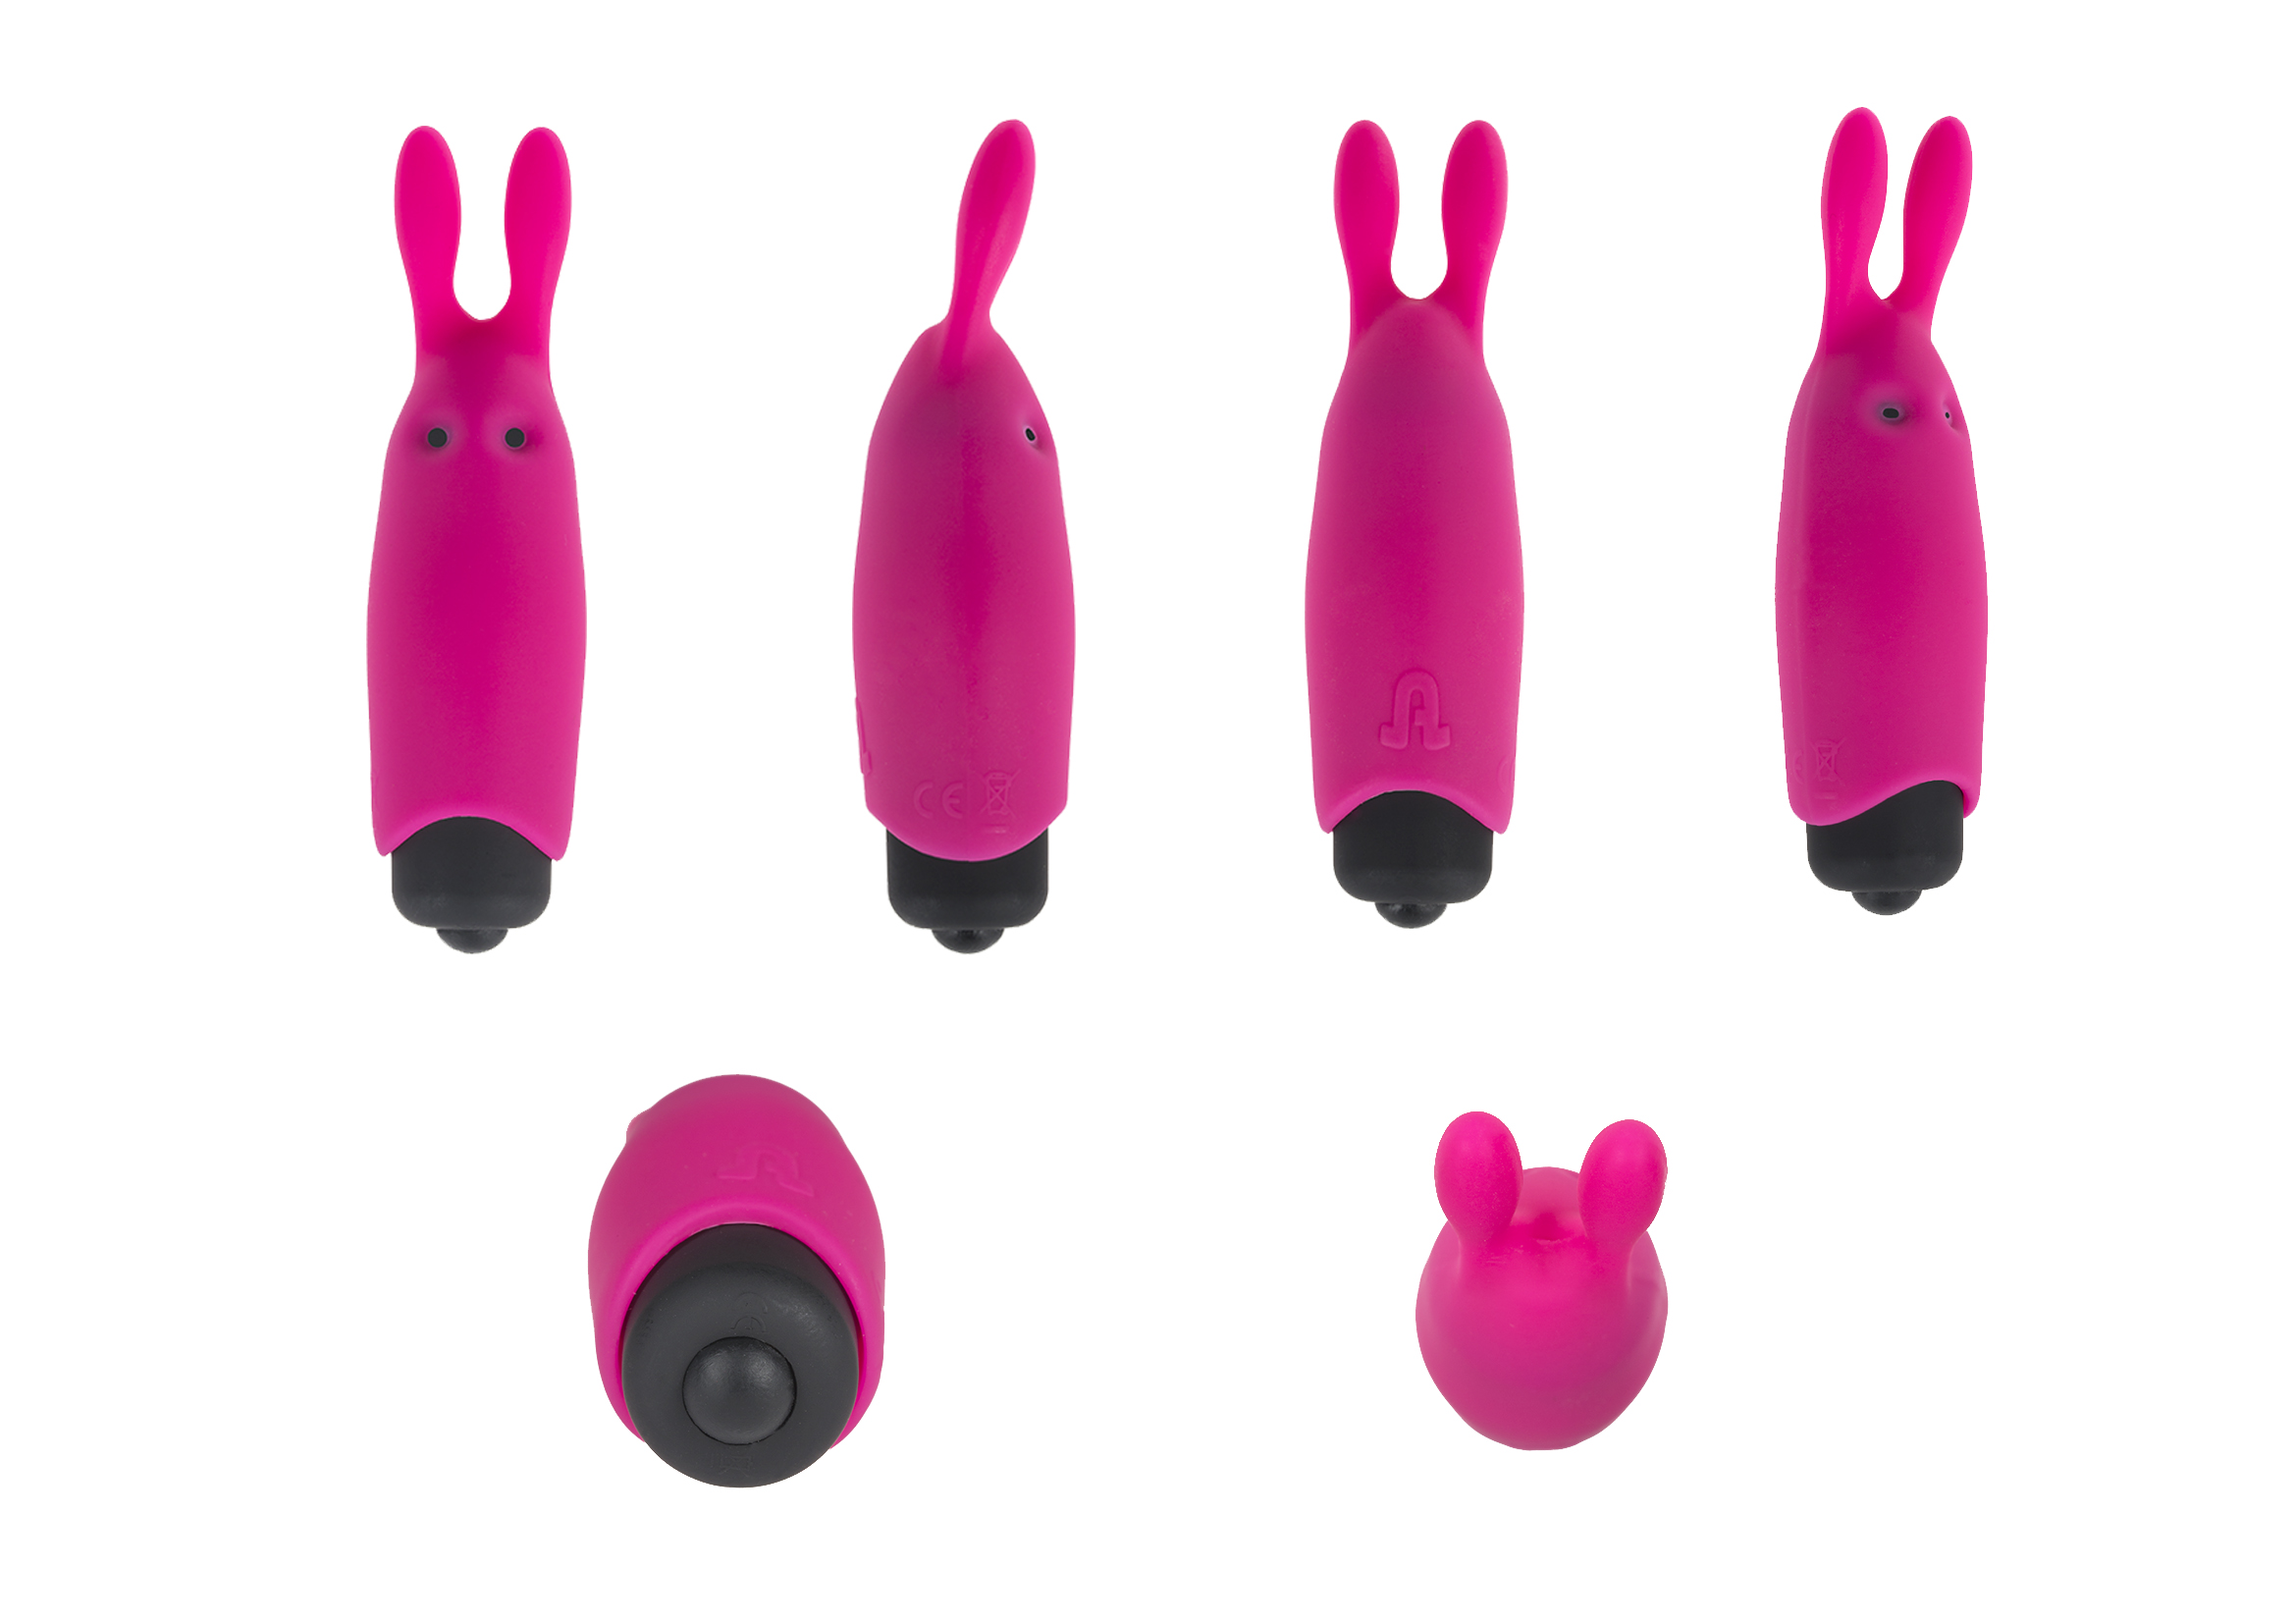 Moteriškas stimuliatorius ,,Adrien Lastic Pocket Vibe\'\', rožinės spalvos (galima rinktis spalvą)